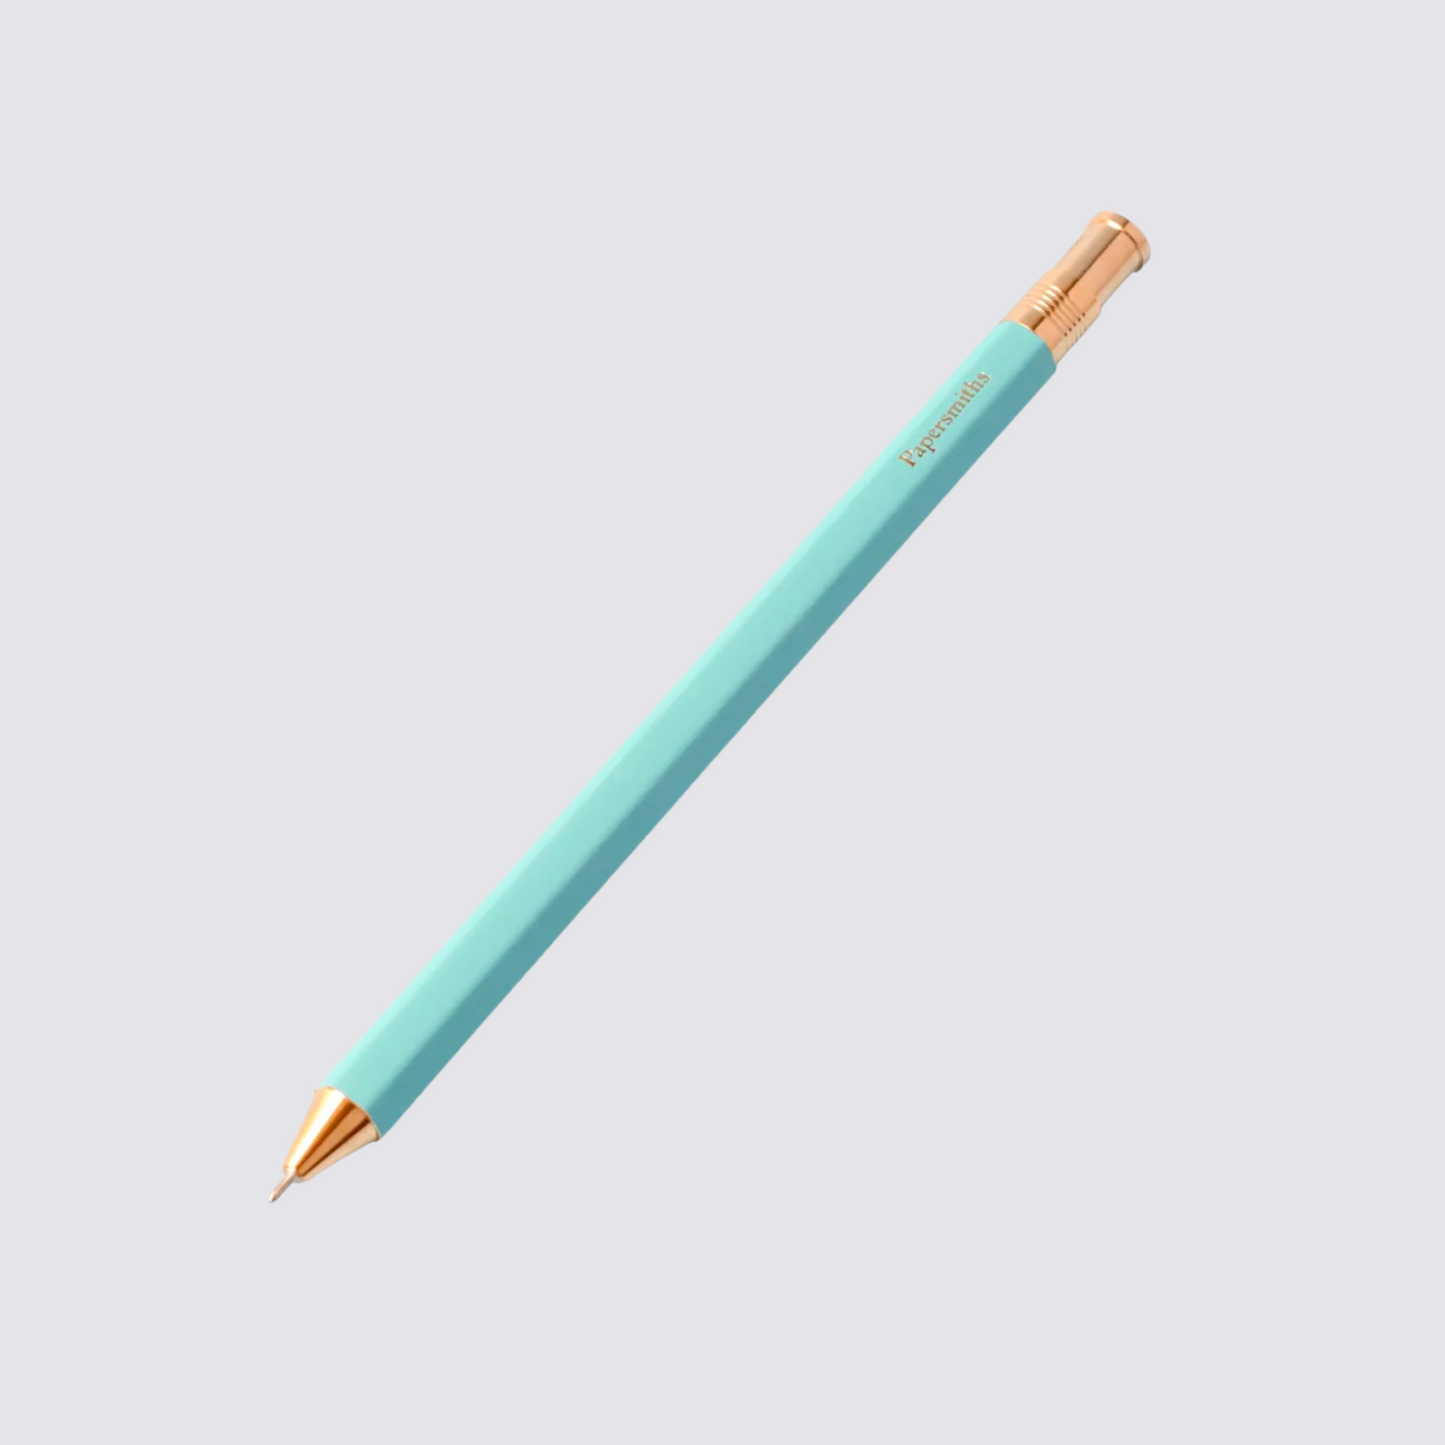 Everyday Pen in light blue